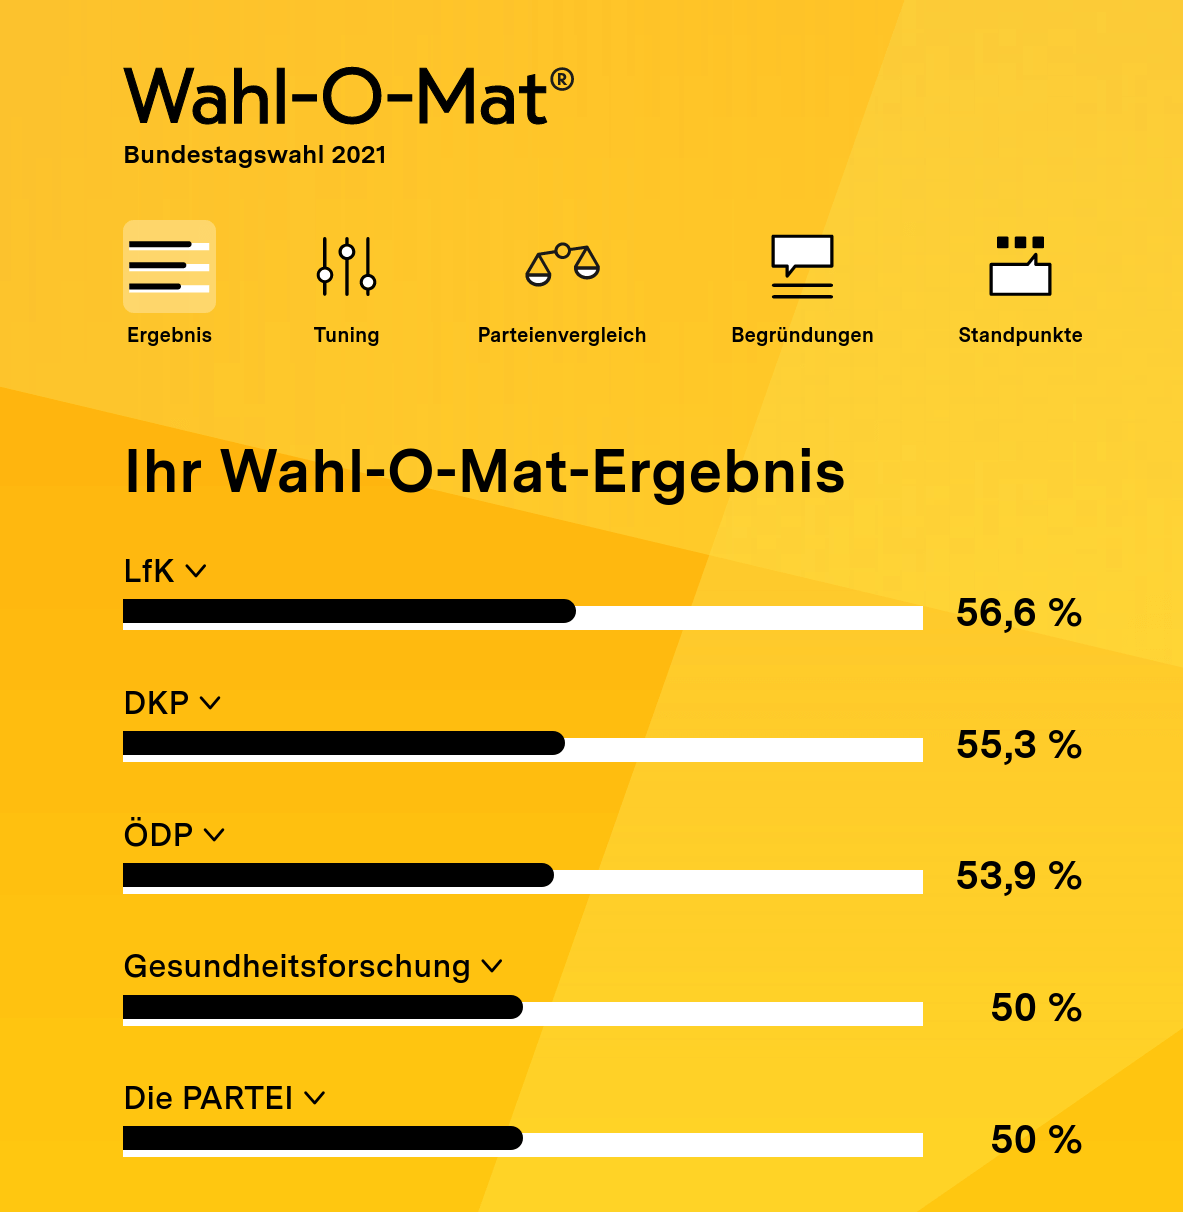 Wahl-O-Mat zur Bundestagswahl - Ergebnis (Beispiel bei zufällig ausgewählten Antworten)